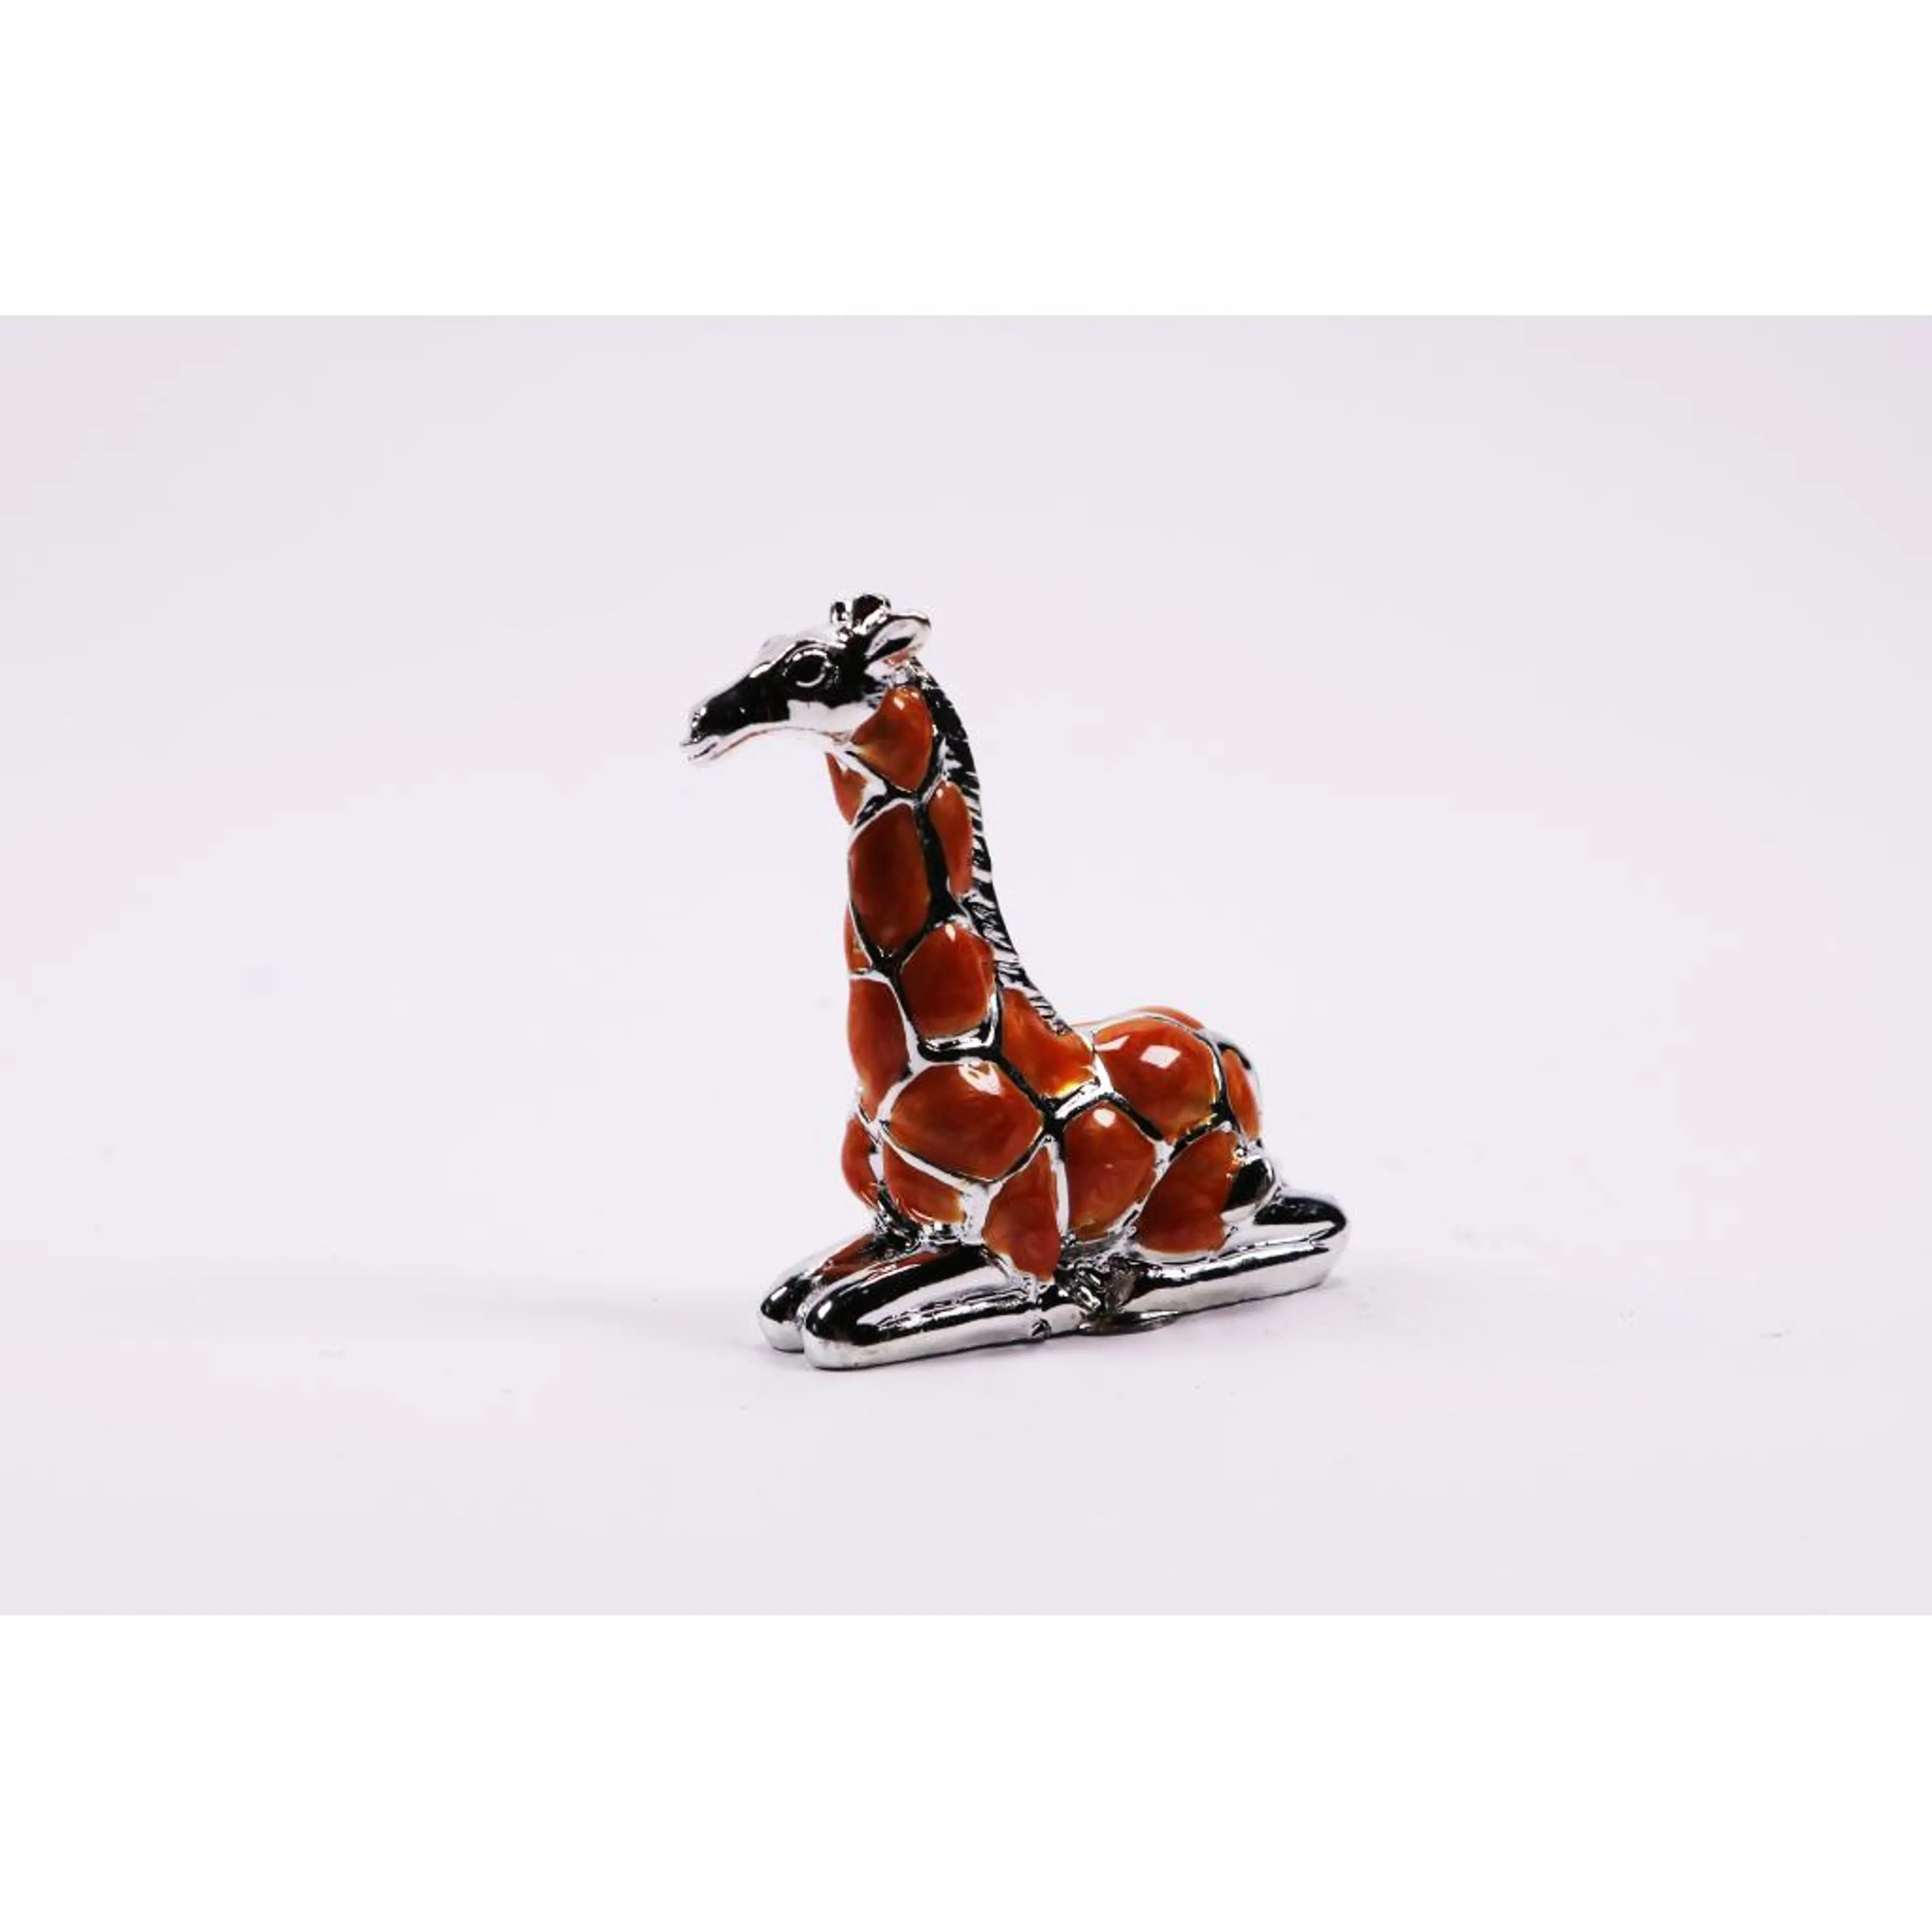 Silver Girave Figurine